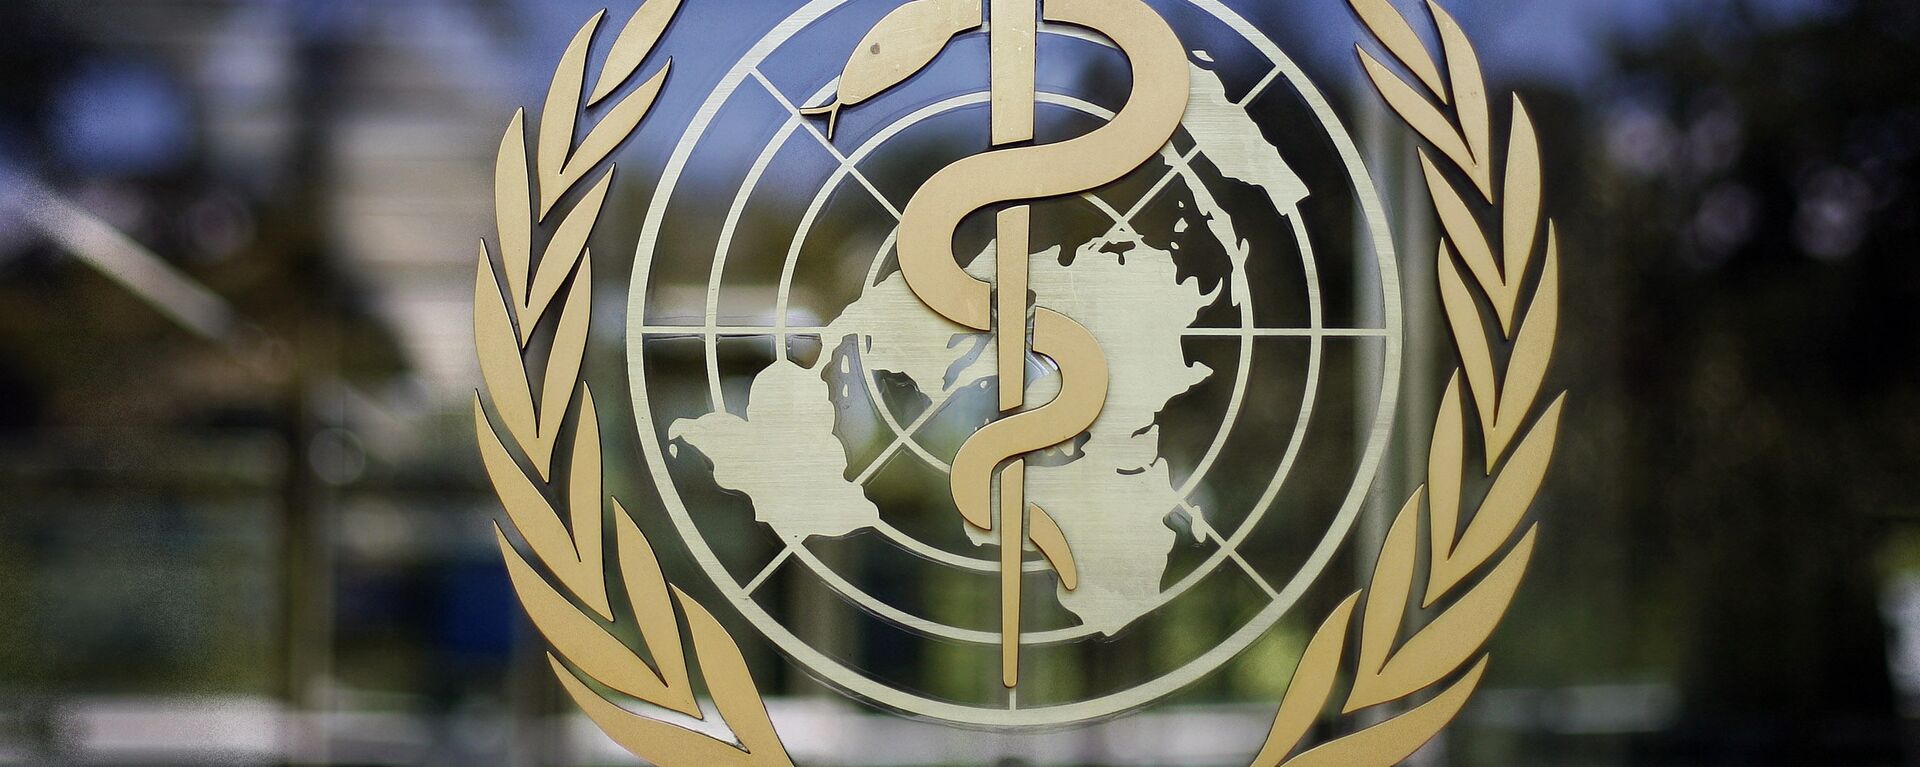 Всемирная Организация Здравоохранения - ВОЗ - Sputnik Грузия, 1920, 14.07.2021